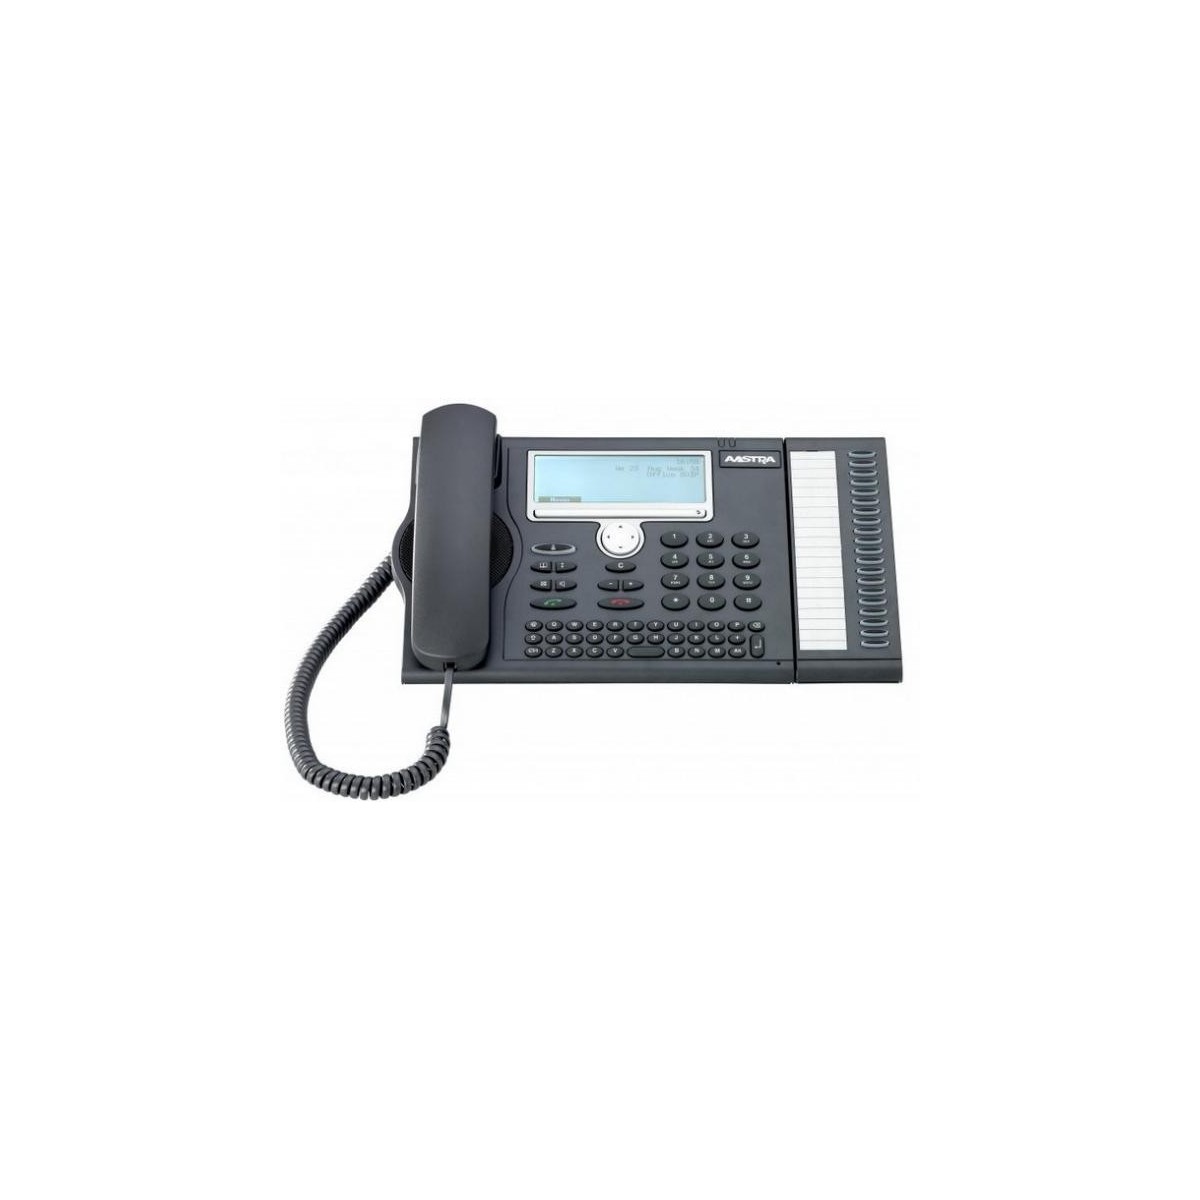 Mitel 5380 - DECT-Telefon - Freisprecheinrichtung - 350 Eintragungen - SMS (Kurznachrichtendienst) - Schwarz